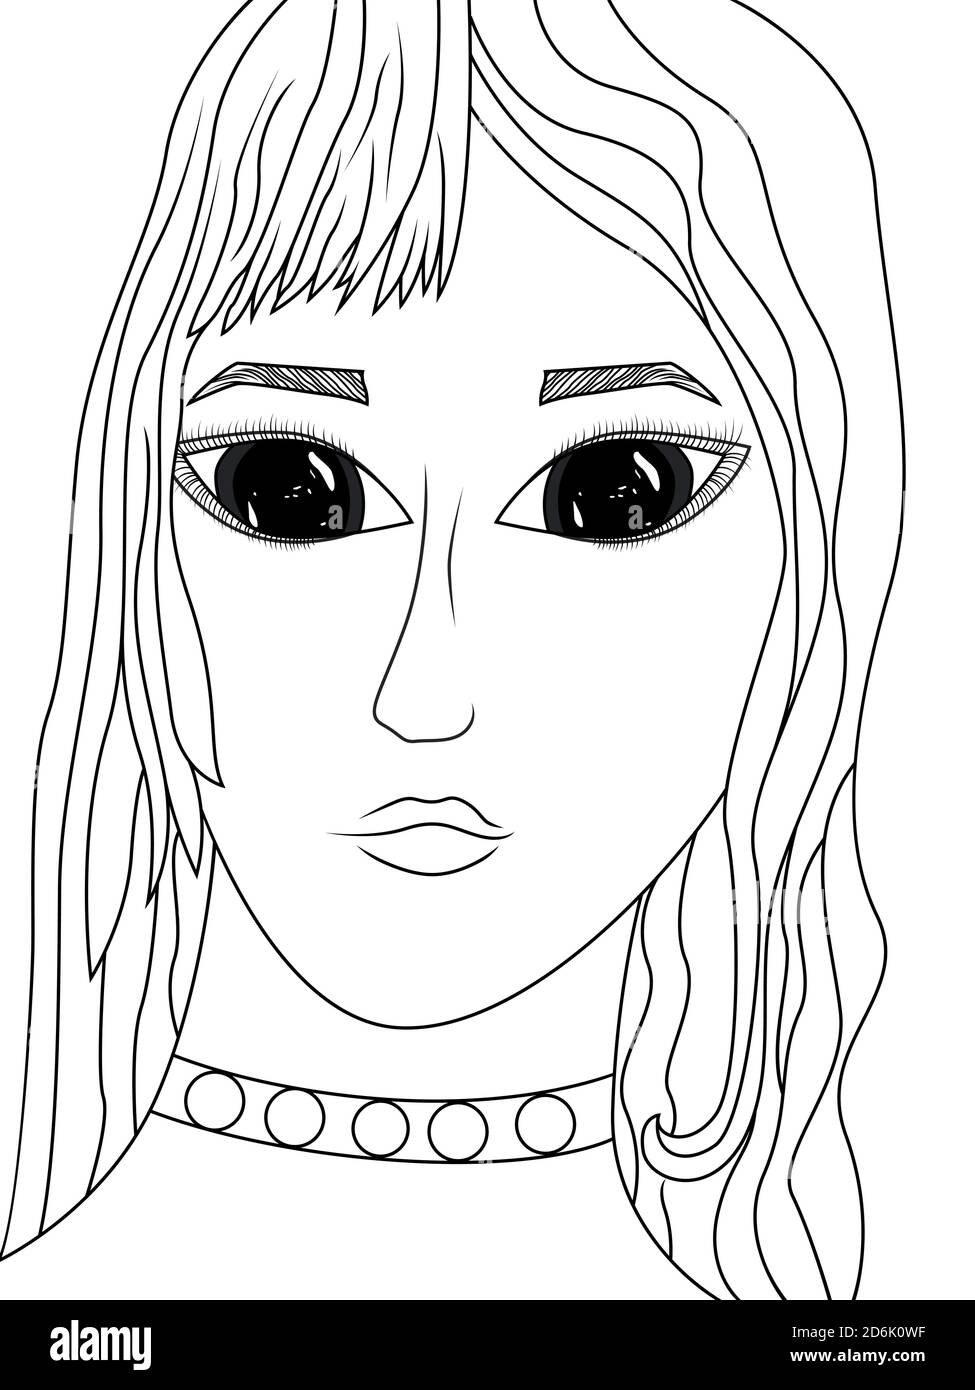 Schwarze Kontur des Gesichts des Mädchens mit großen expressiven Augen, Vektor als Kinderzeichnung gemacht Stock Vektor